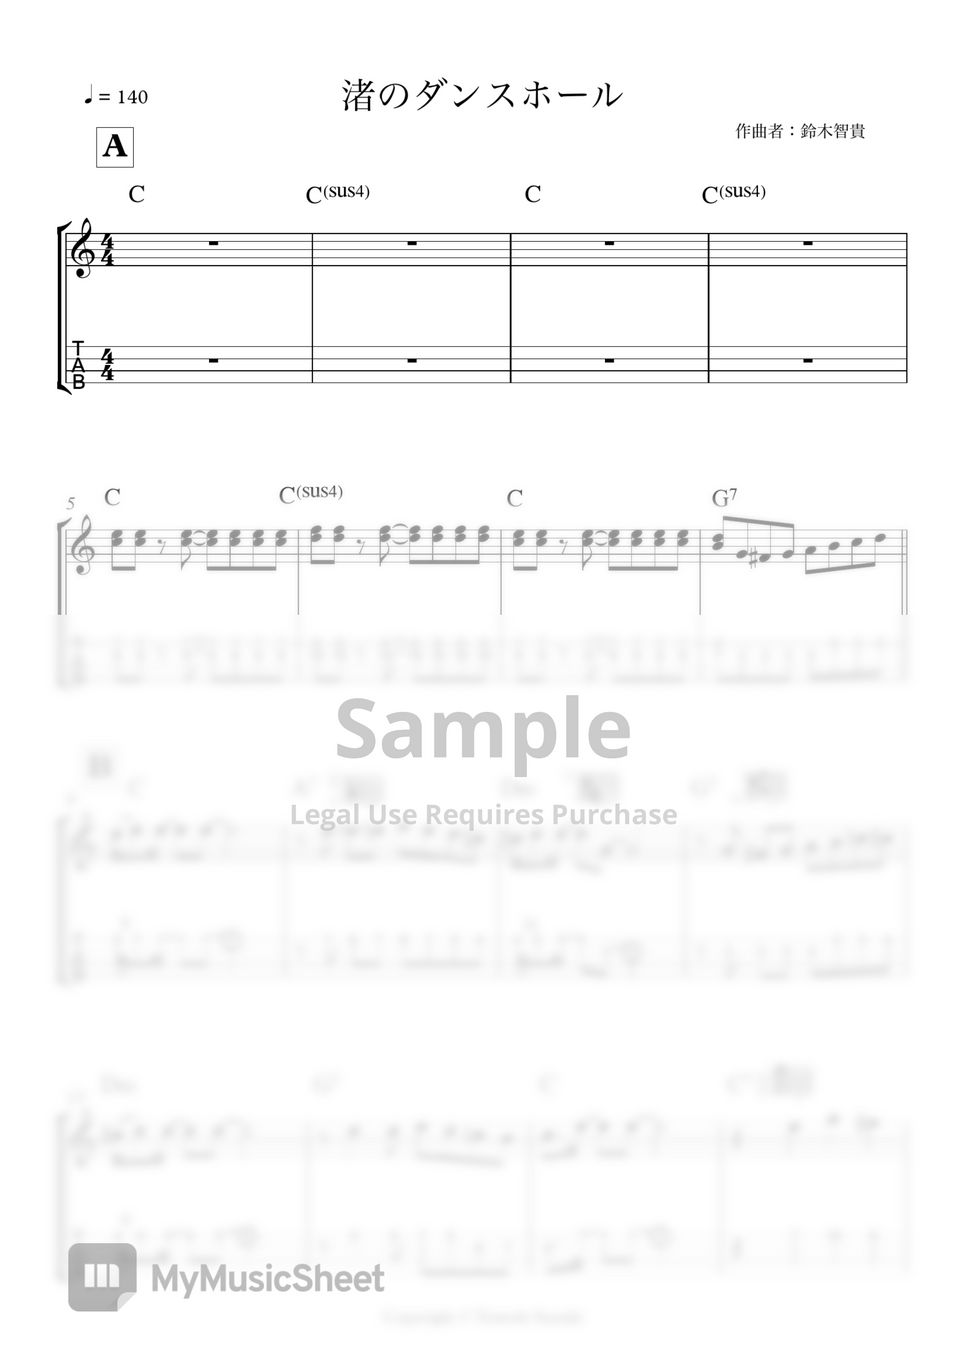 TOMOKI SUZUKI - NAGISA NO DANCE HALL (Melody score) by Tomoki Suzuki